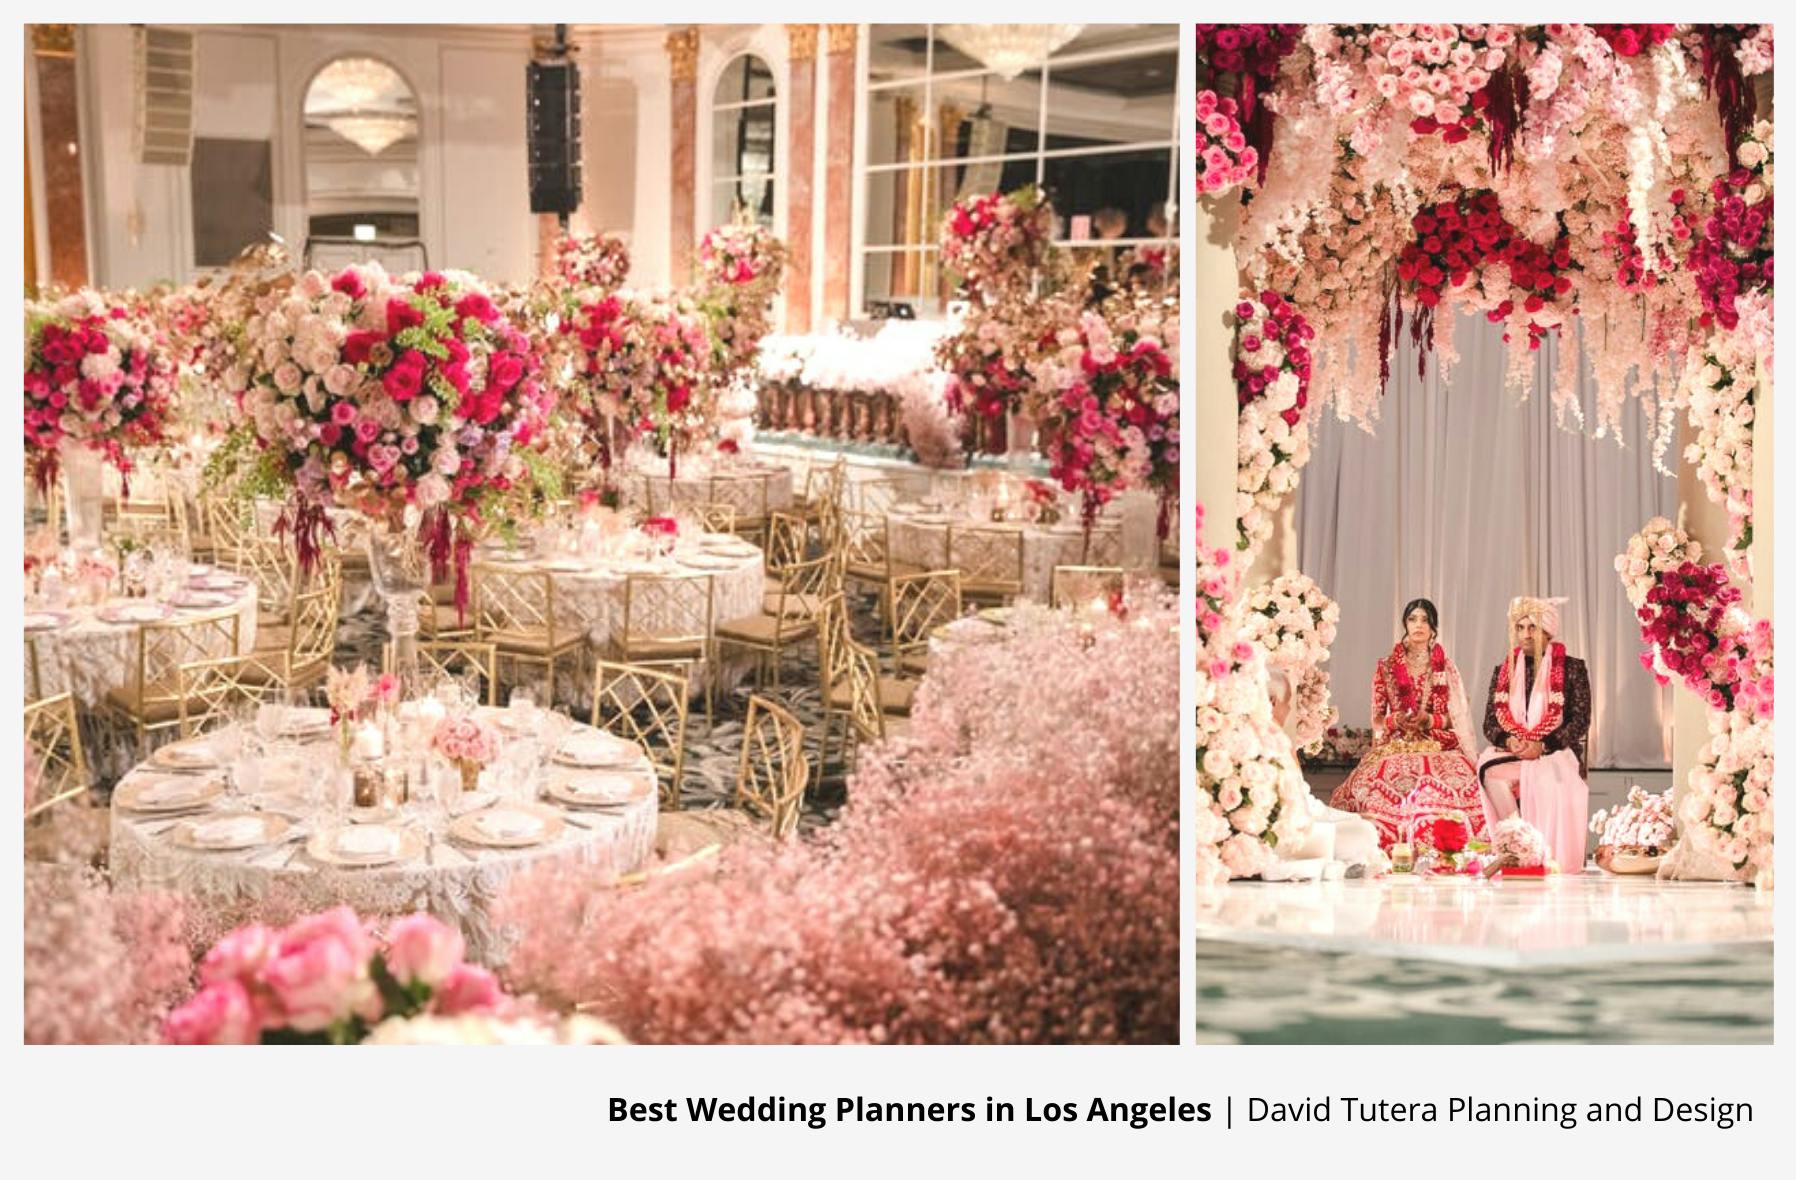 David Tutera - Event Planner, Fashion Designer & Wedding Expert